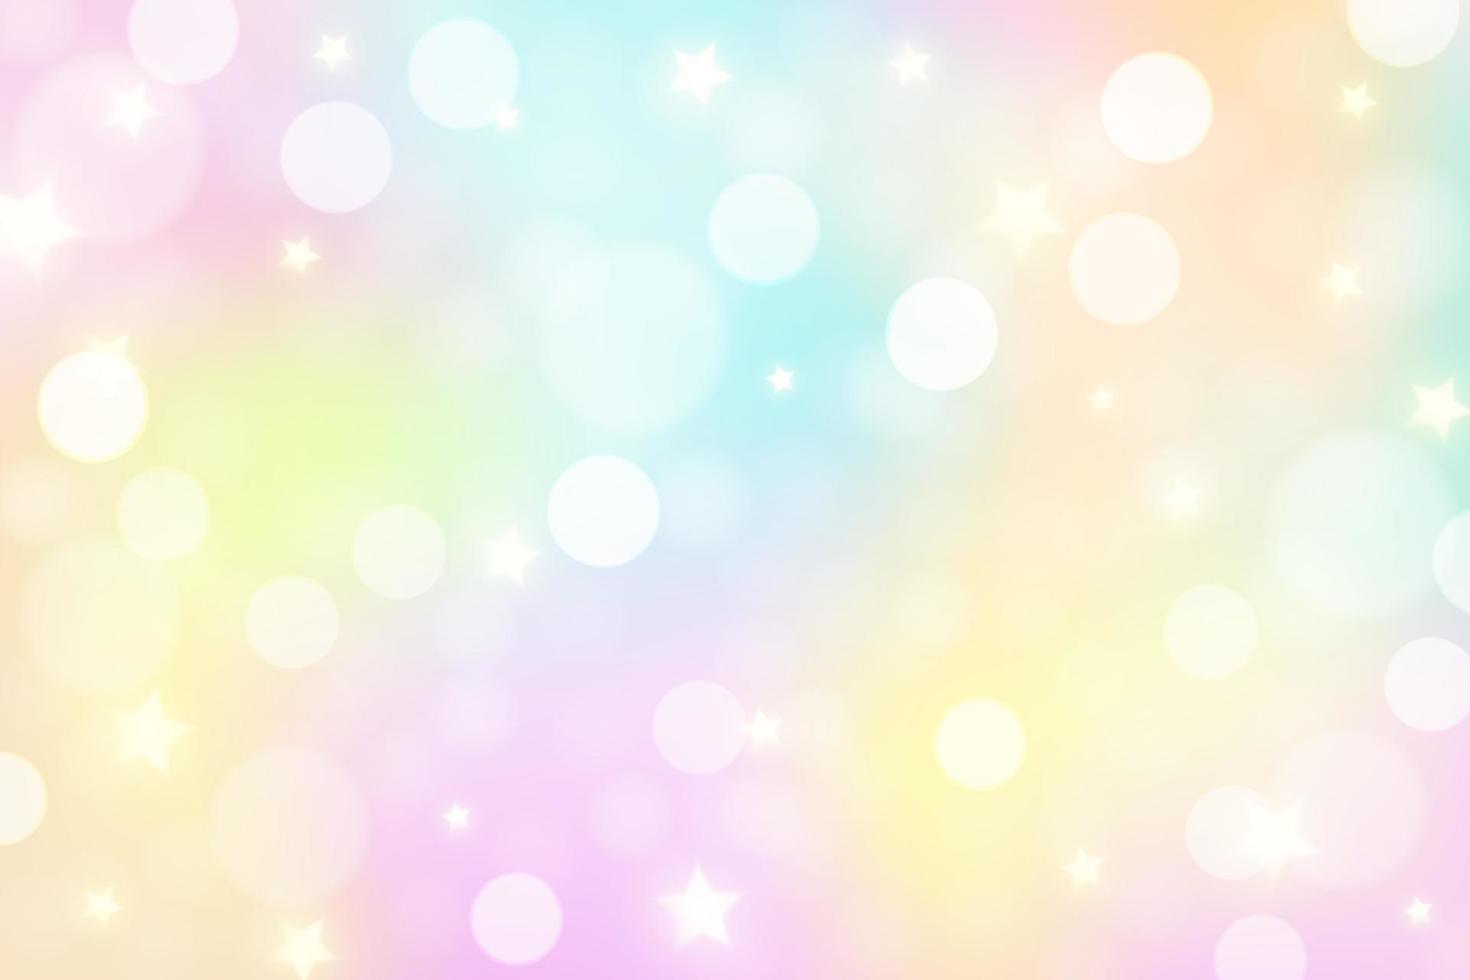 fundo de unicórnio arco-íris. céu de cor gradiente pastel com glitter. espaço mágico da galáxia e estrelas. padrão abstrato de vetor. vetor